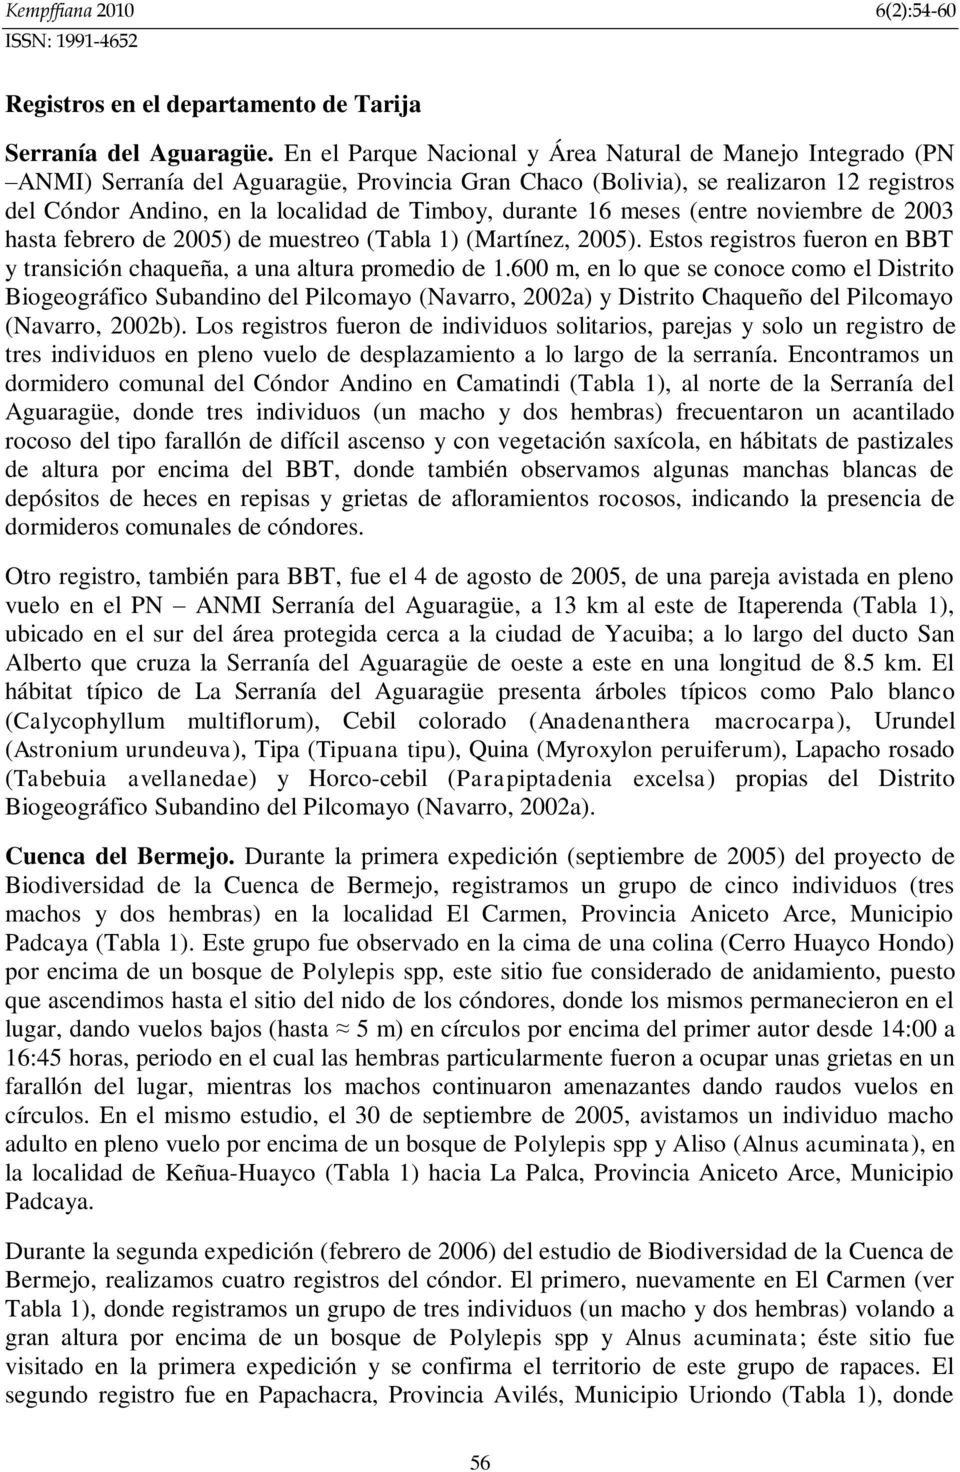 (entre noviembre de 2003 hasta febrero de 2005) de muestreo (Tabla 1) (Martínez, 2005). Estos registros fueron en BBT y transición chaqueña, a una altura promedio de 1.